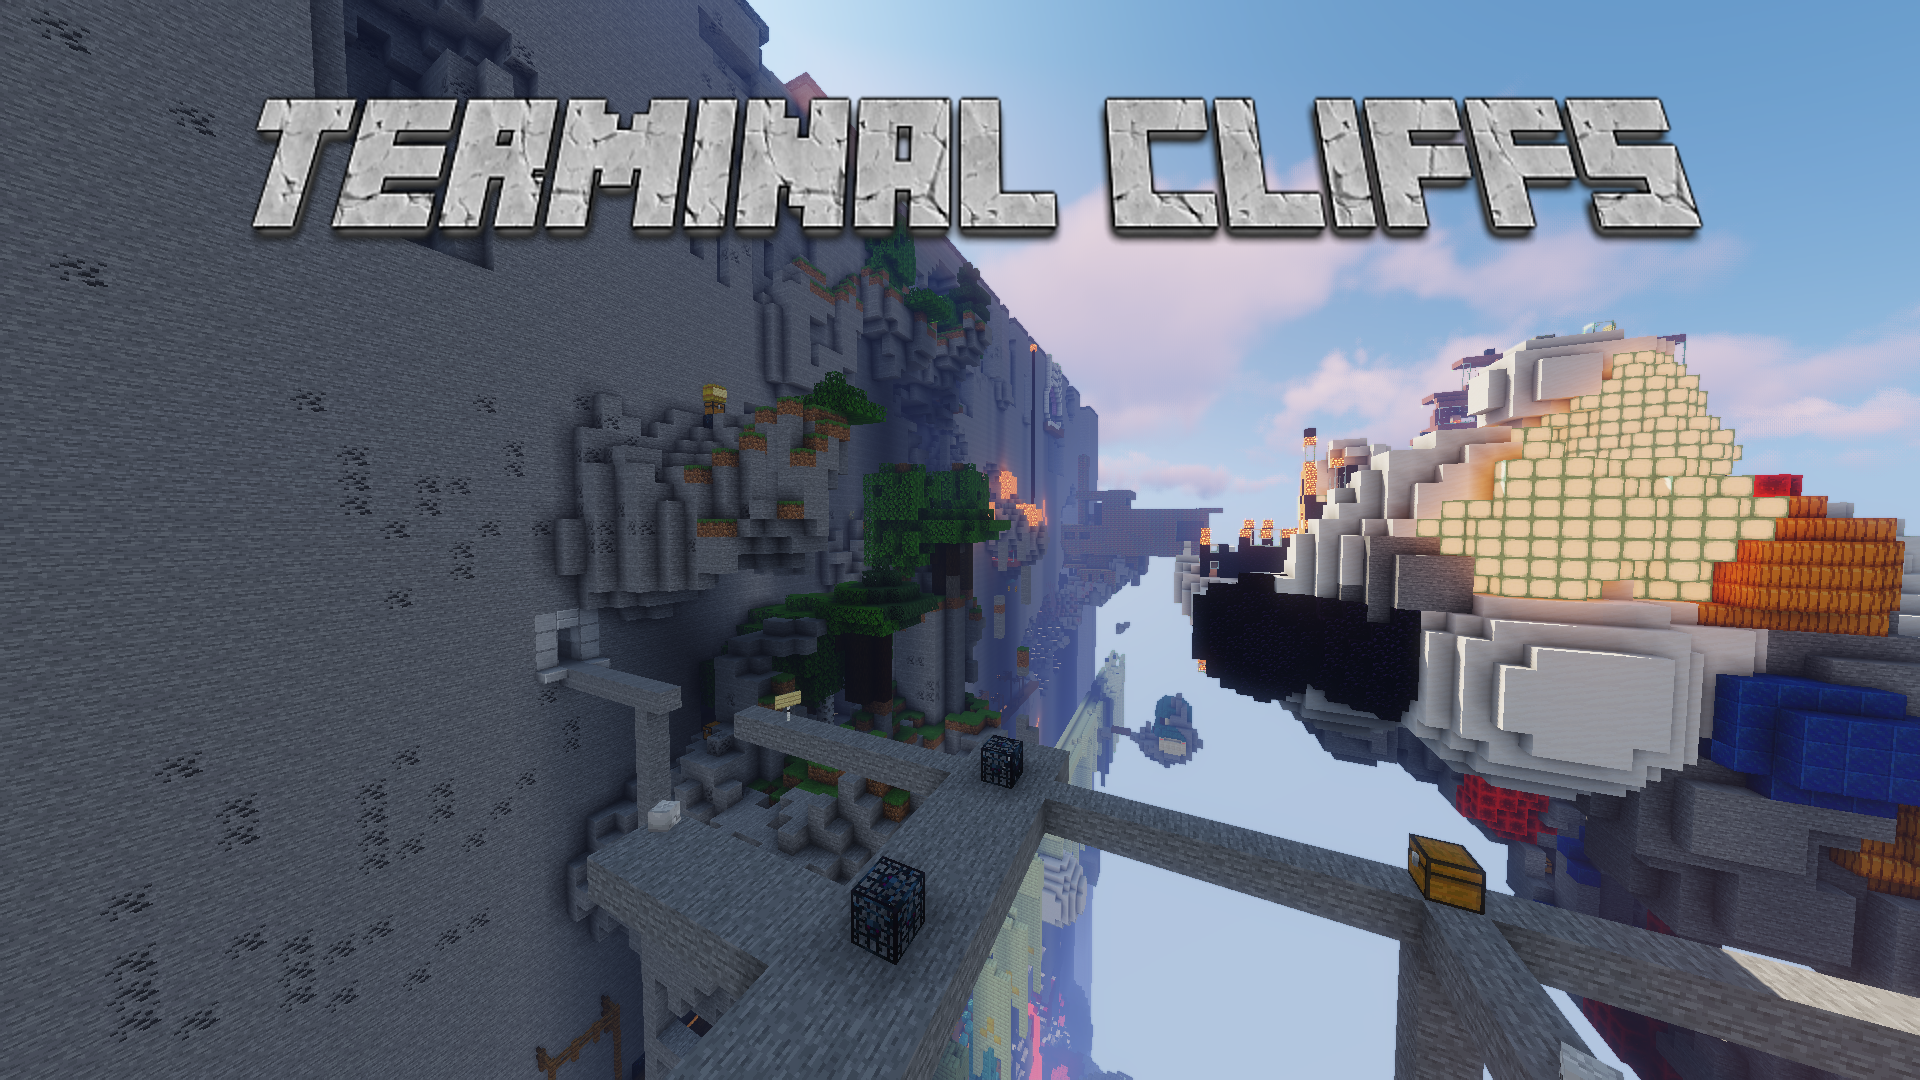 İndir Terminal Cliffs için Minecraft 1.16.2